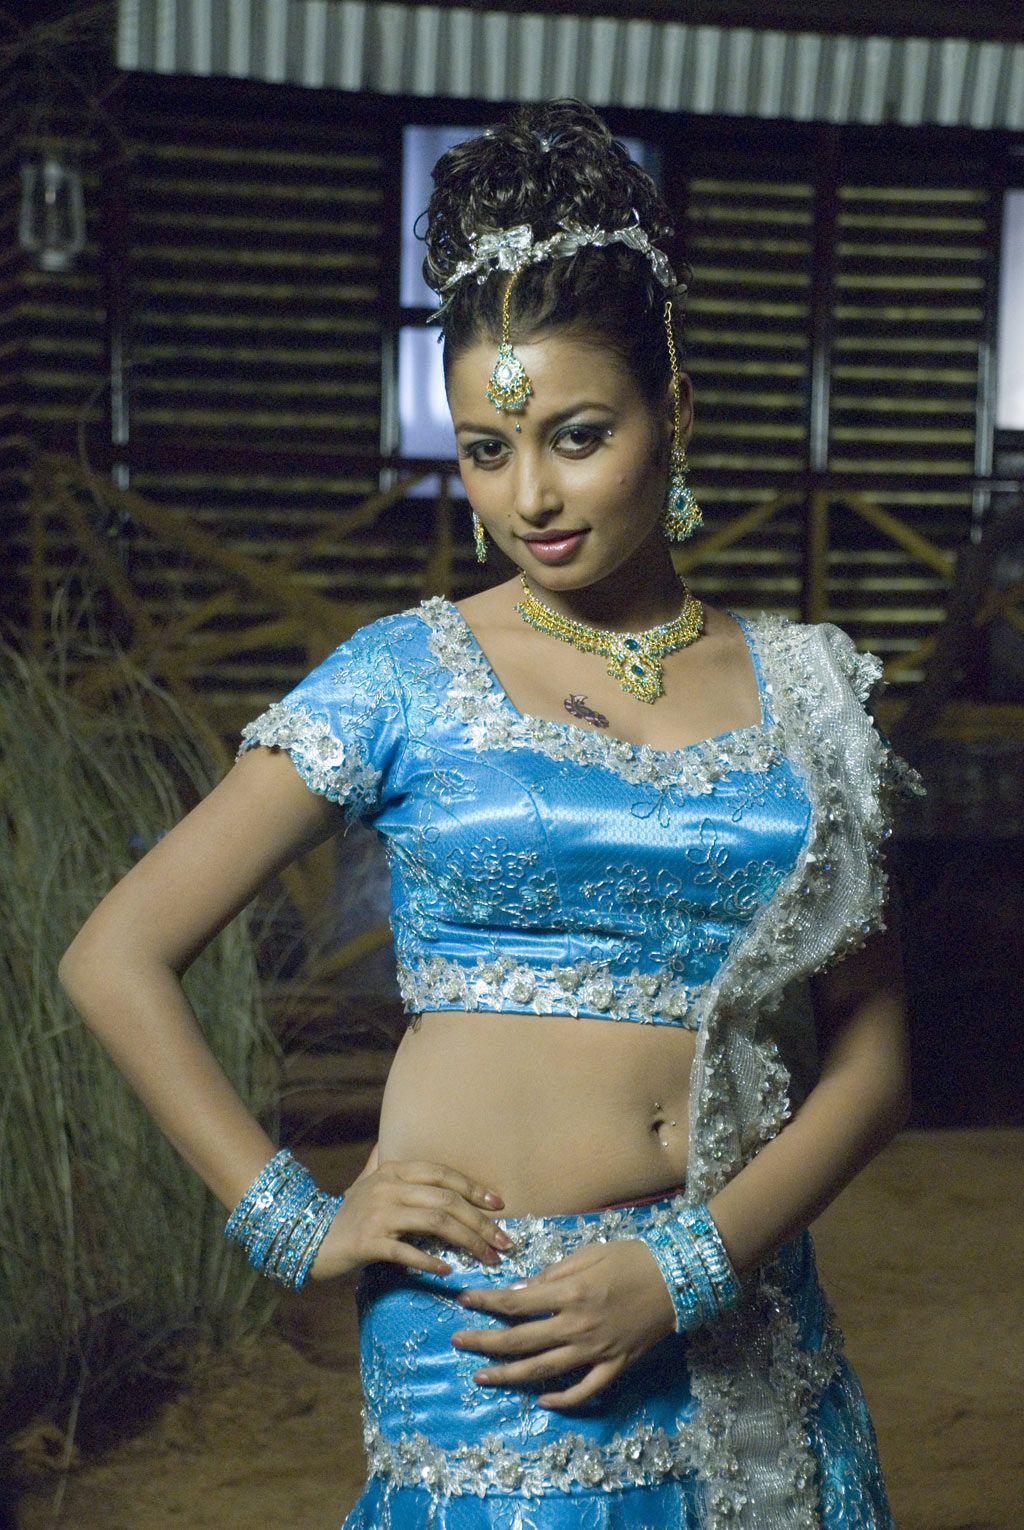 Hot Tamil Actresses Hot Tamil Actress Richa Sinha Blouse